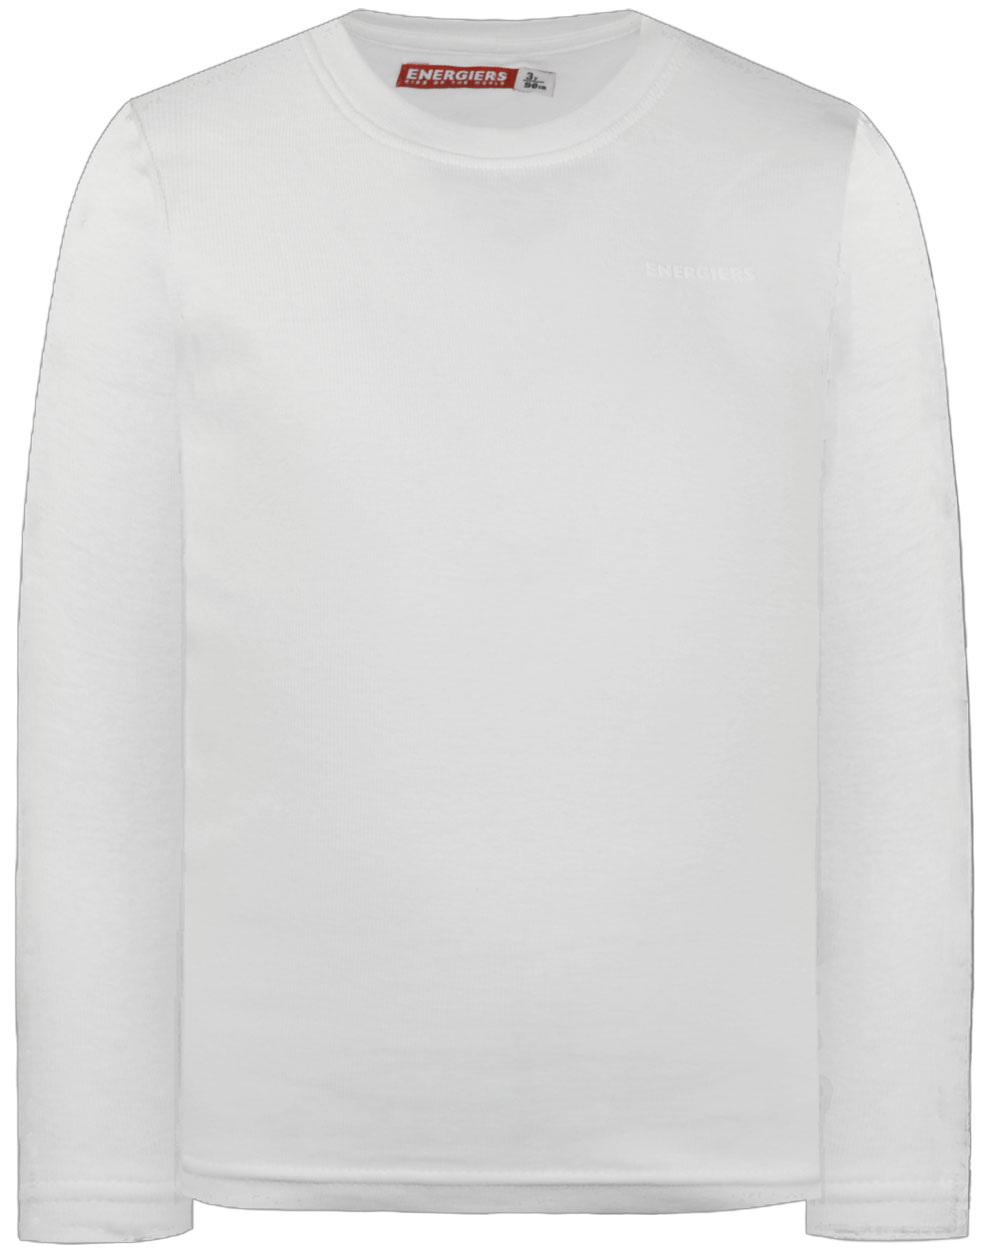 Βαμβακερή μπλούζα με λαιμόκοψη Energiers Basic Line για αγόρι | ΕΚΡΟΥ ΑΓΟΡΙ 1-6>Μπλούζα